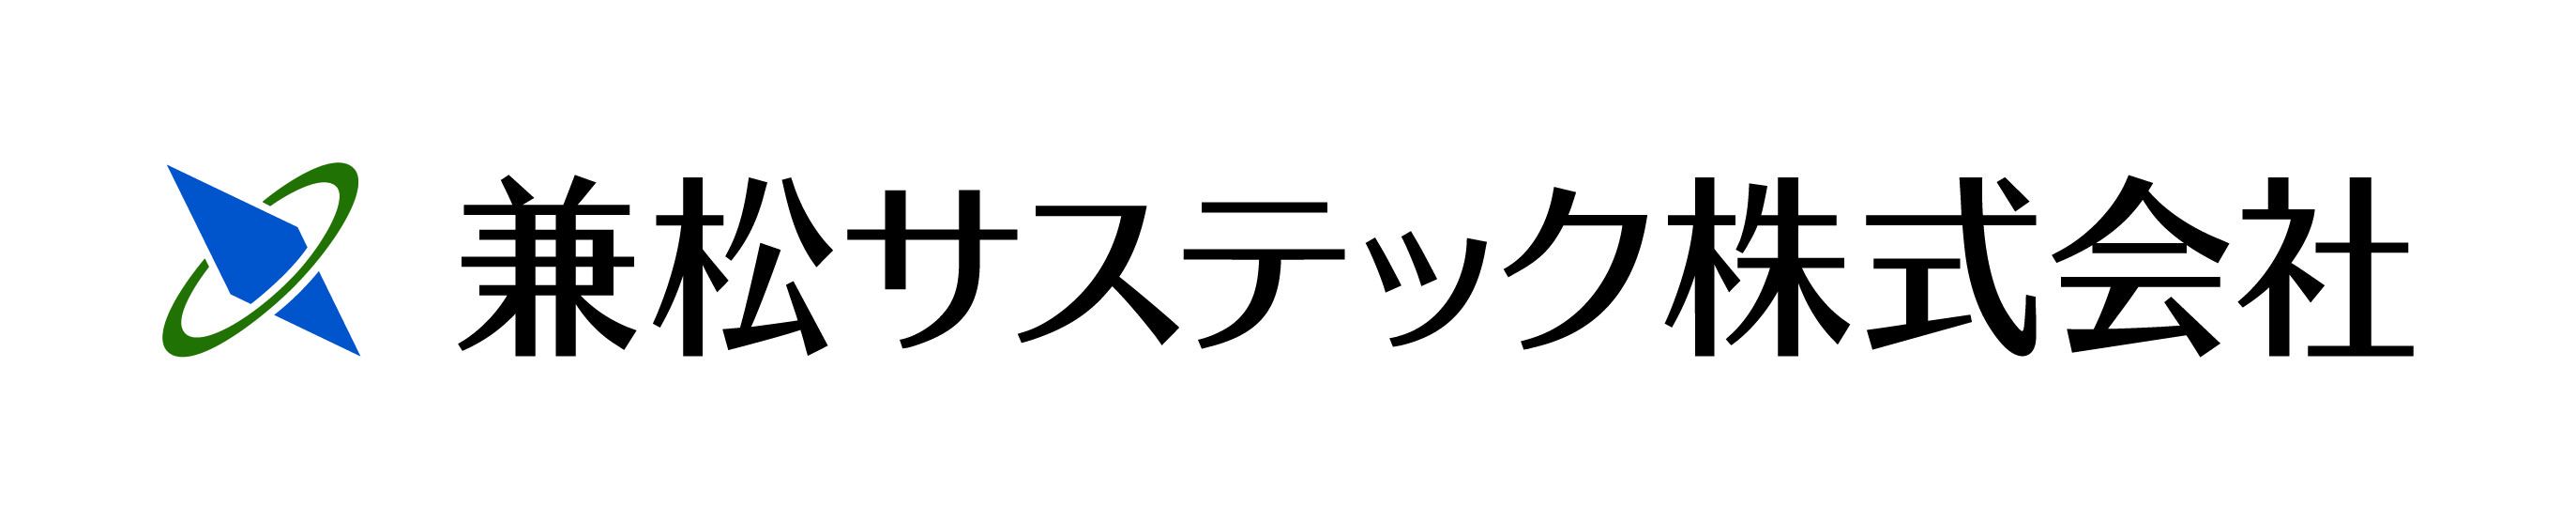 兼松サステック株式会社のロゴ